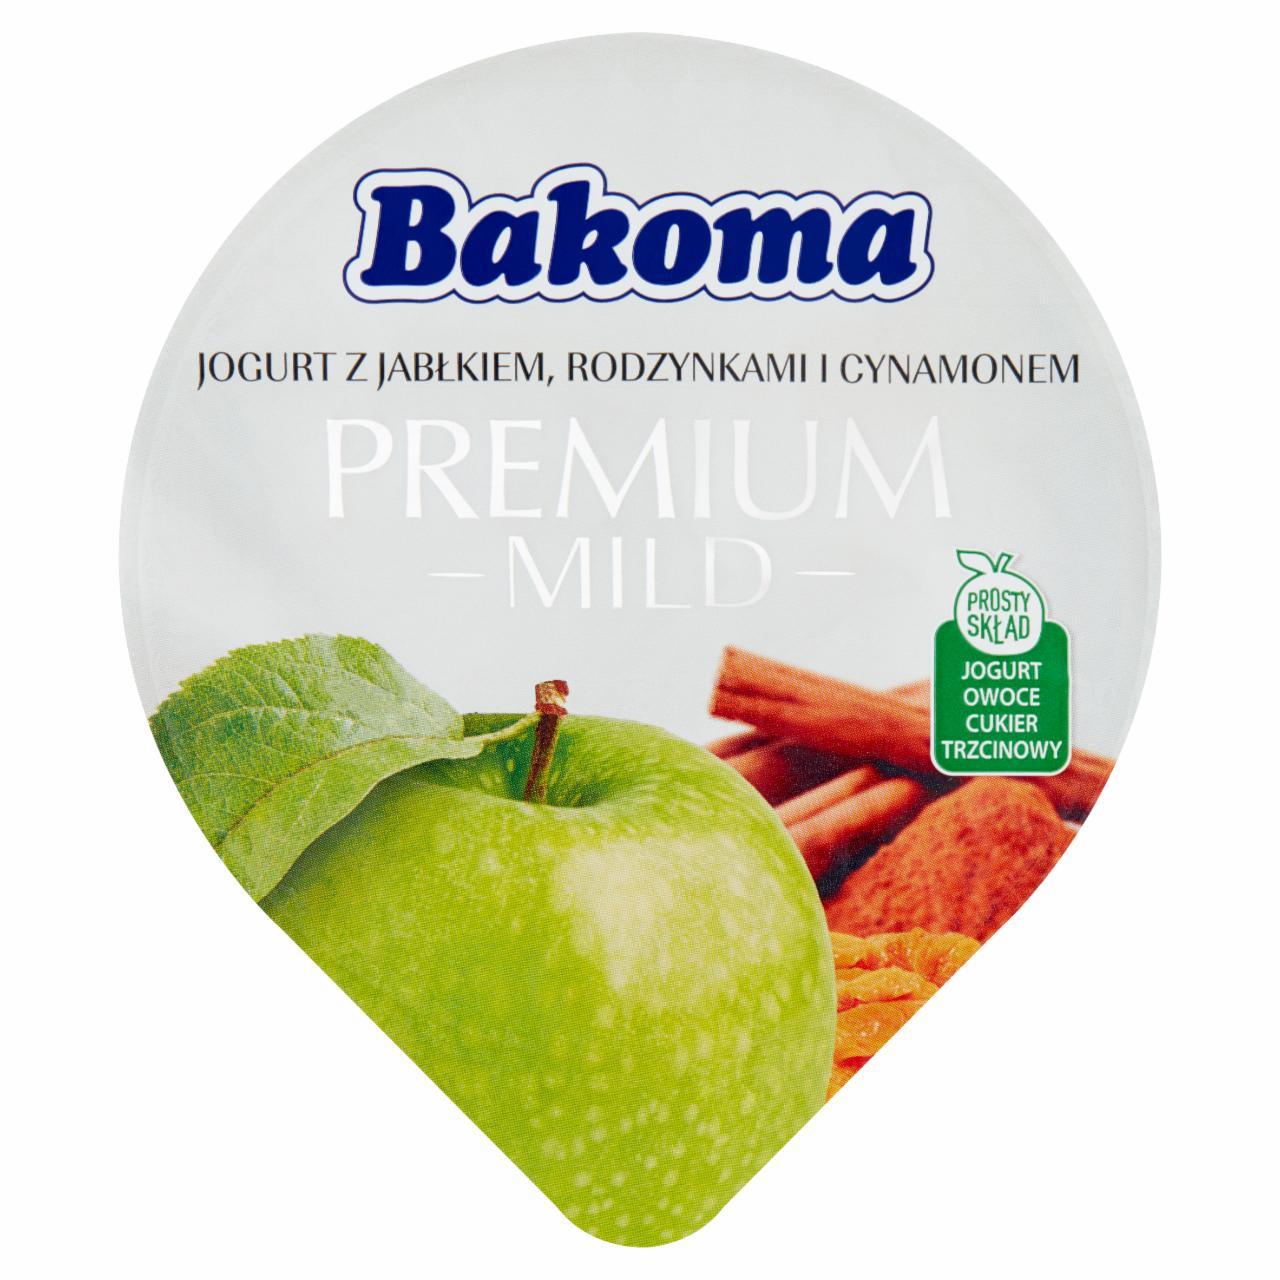 Zdjęcia - Bakoma Premium Mild Jogurt z jabłkiem rodzynkami i cynamonem 140 g